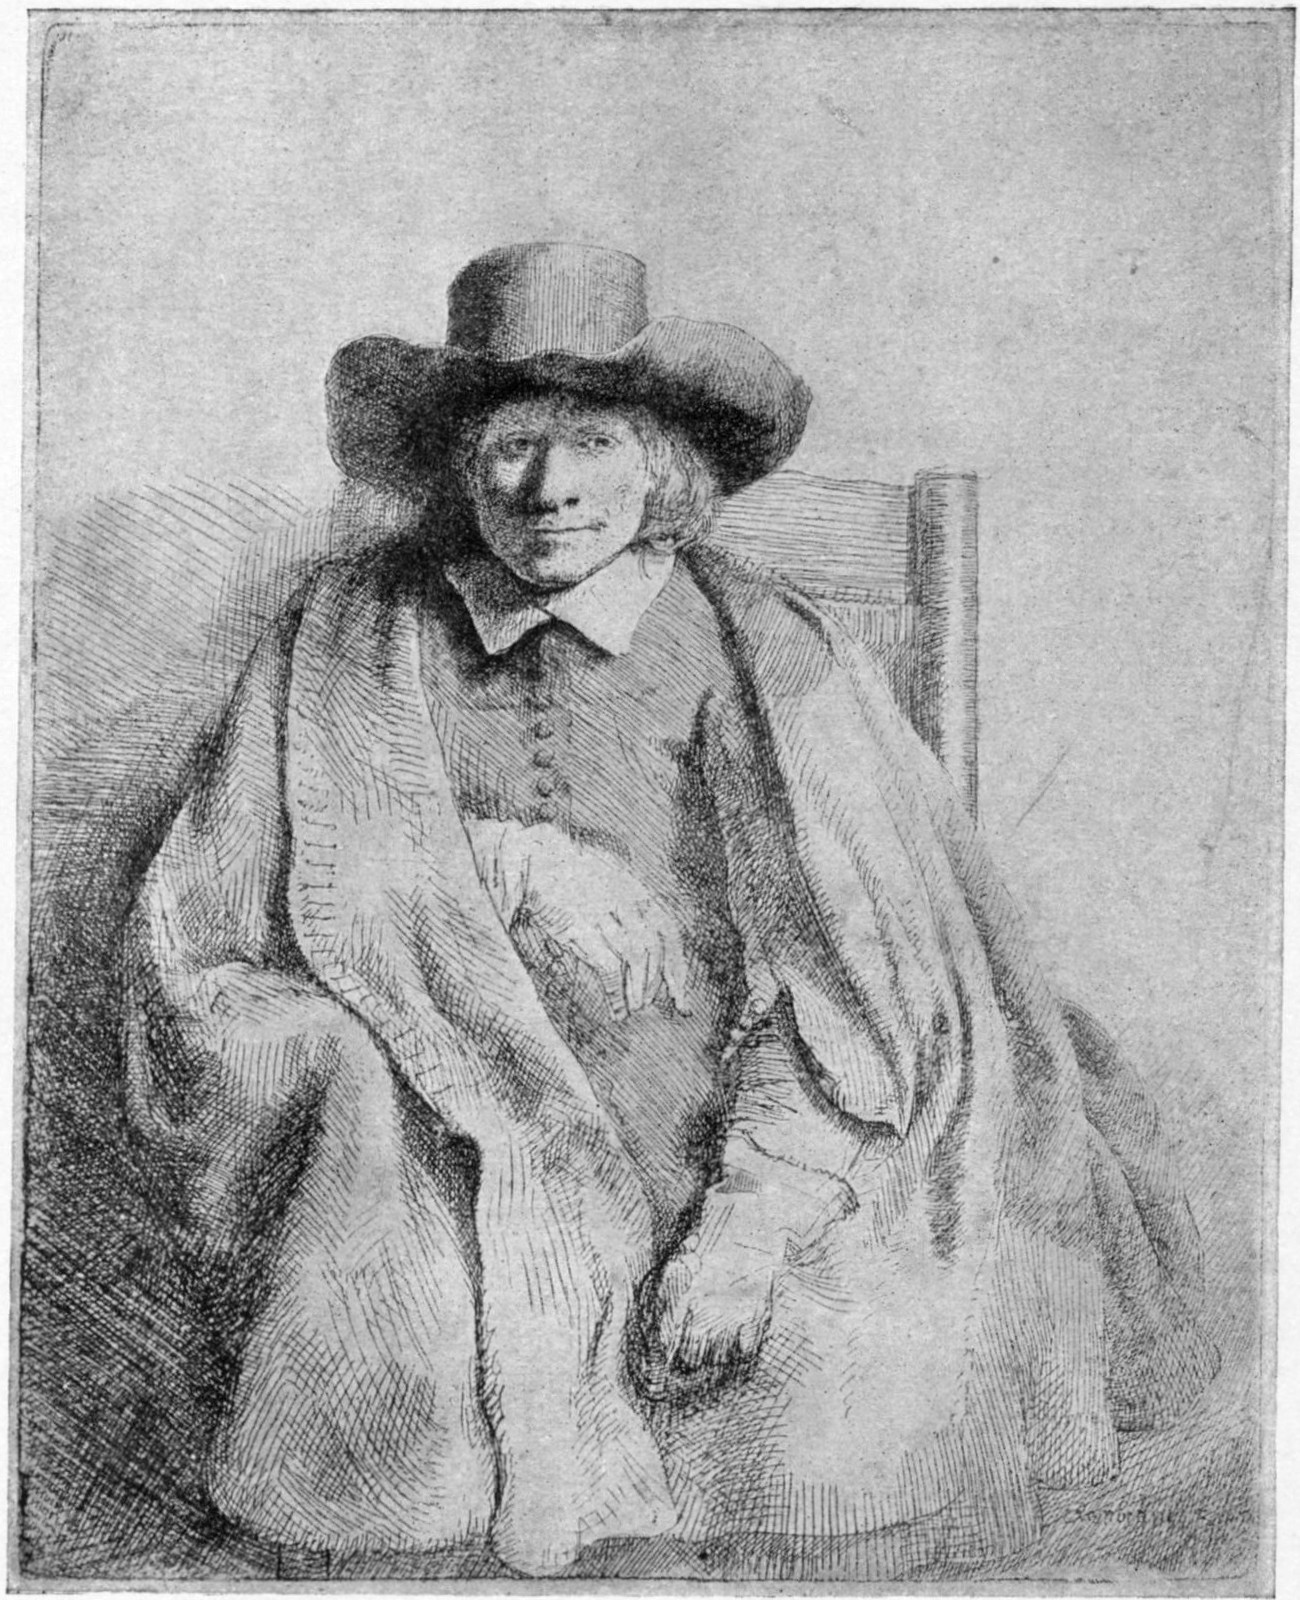 251, I. CLEMENT DE JONGHE, PRINTSELLER. 1651. B. 272